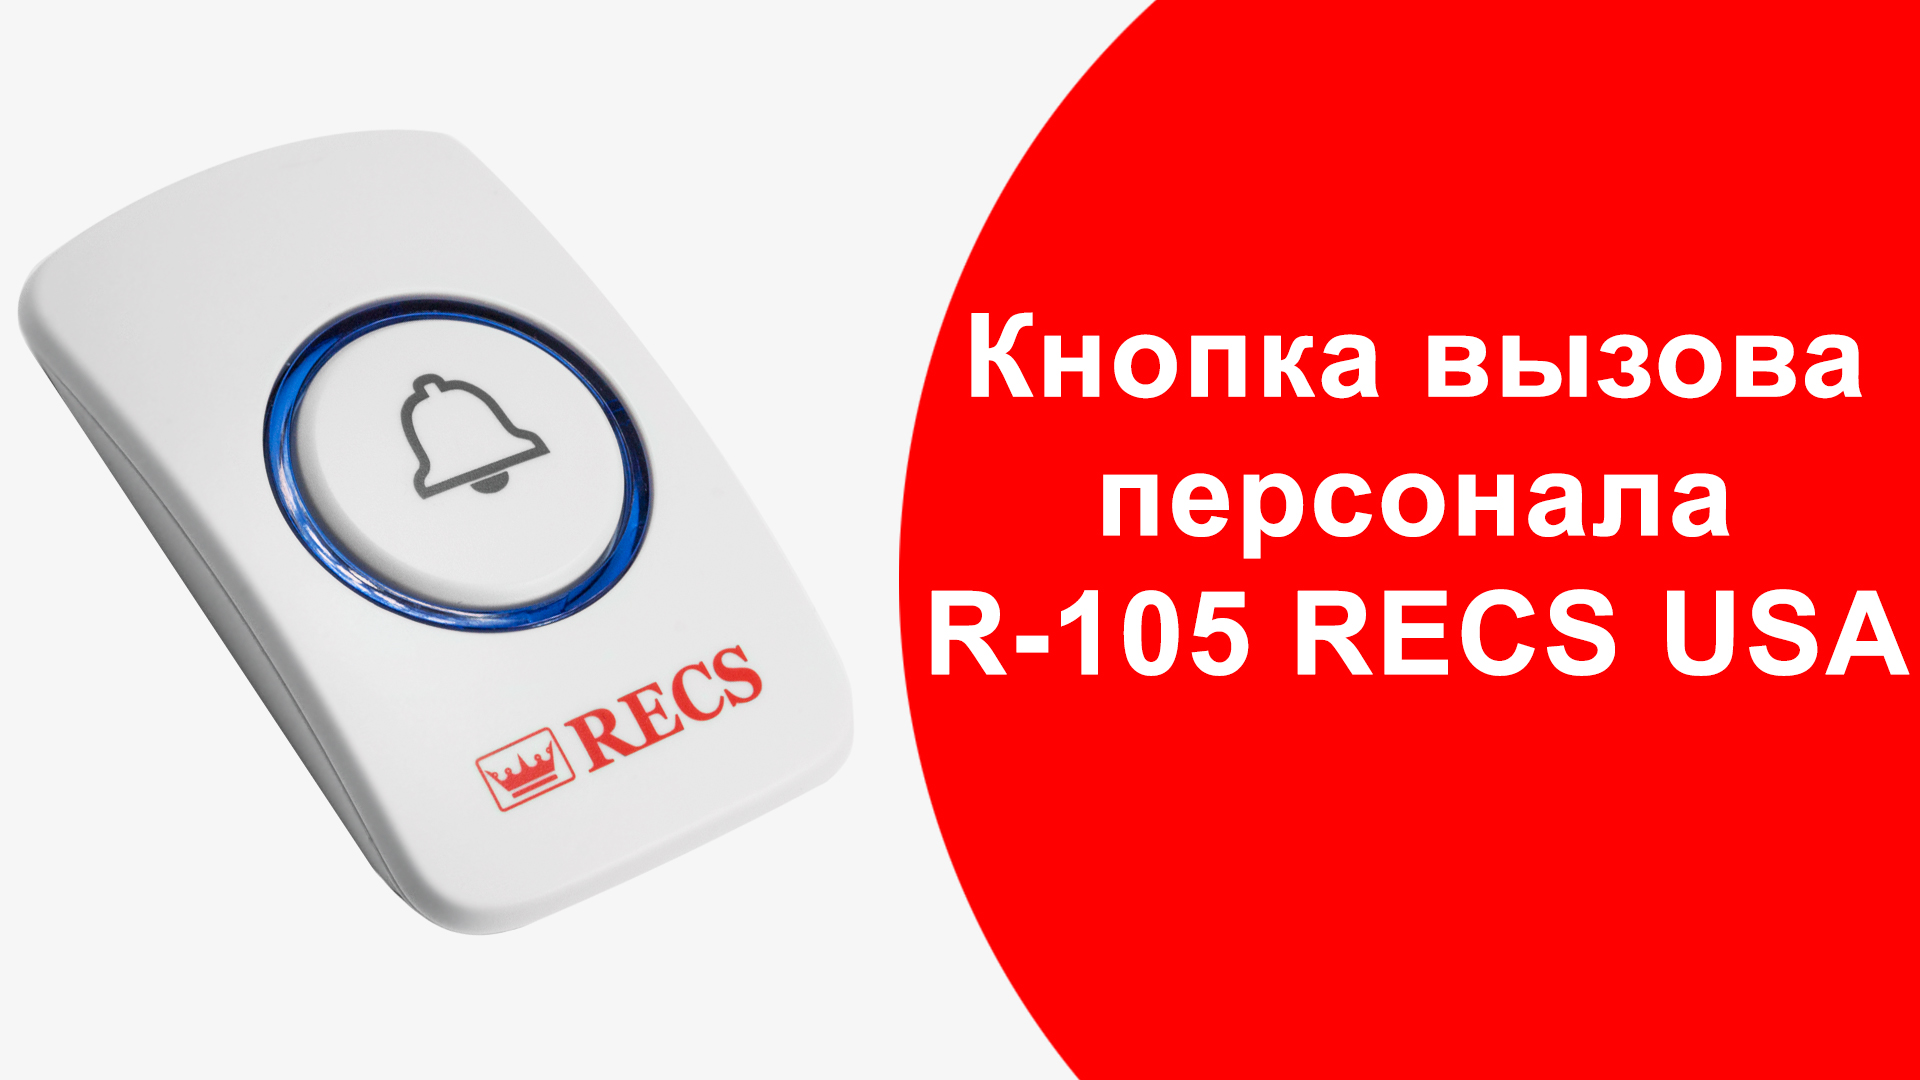    R-105 RECS